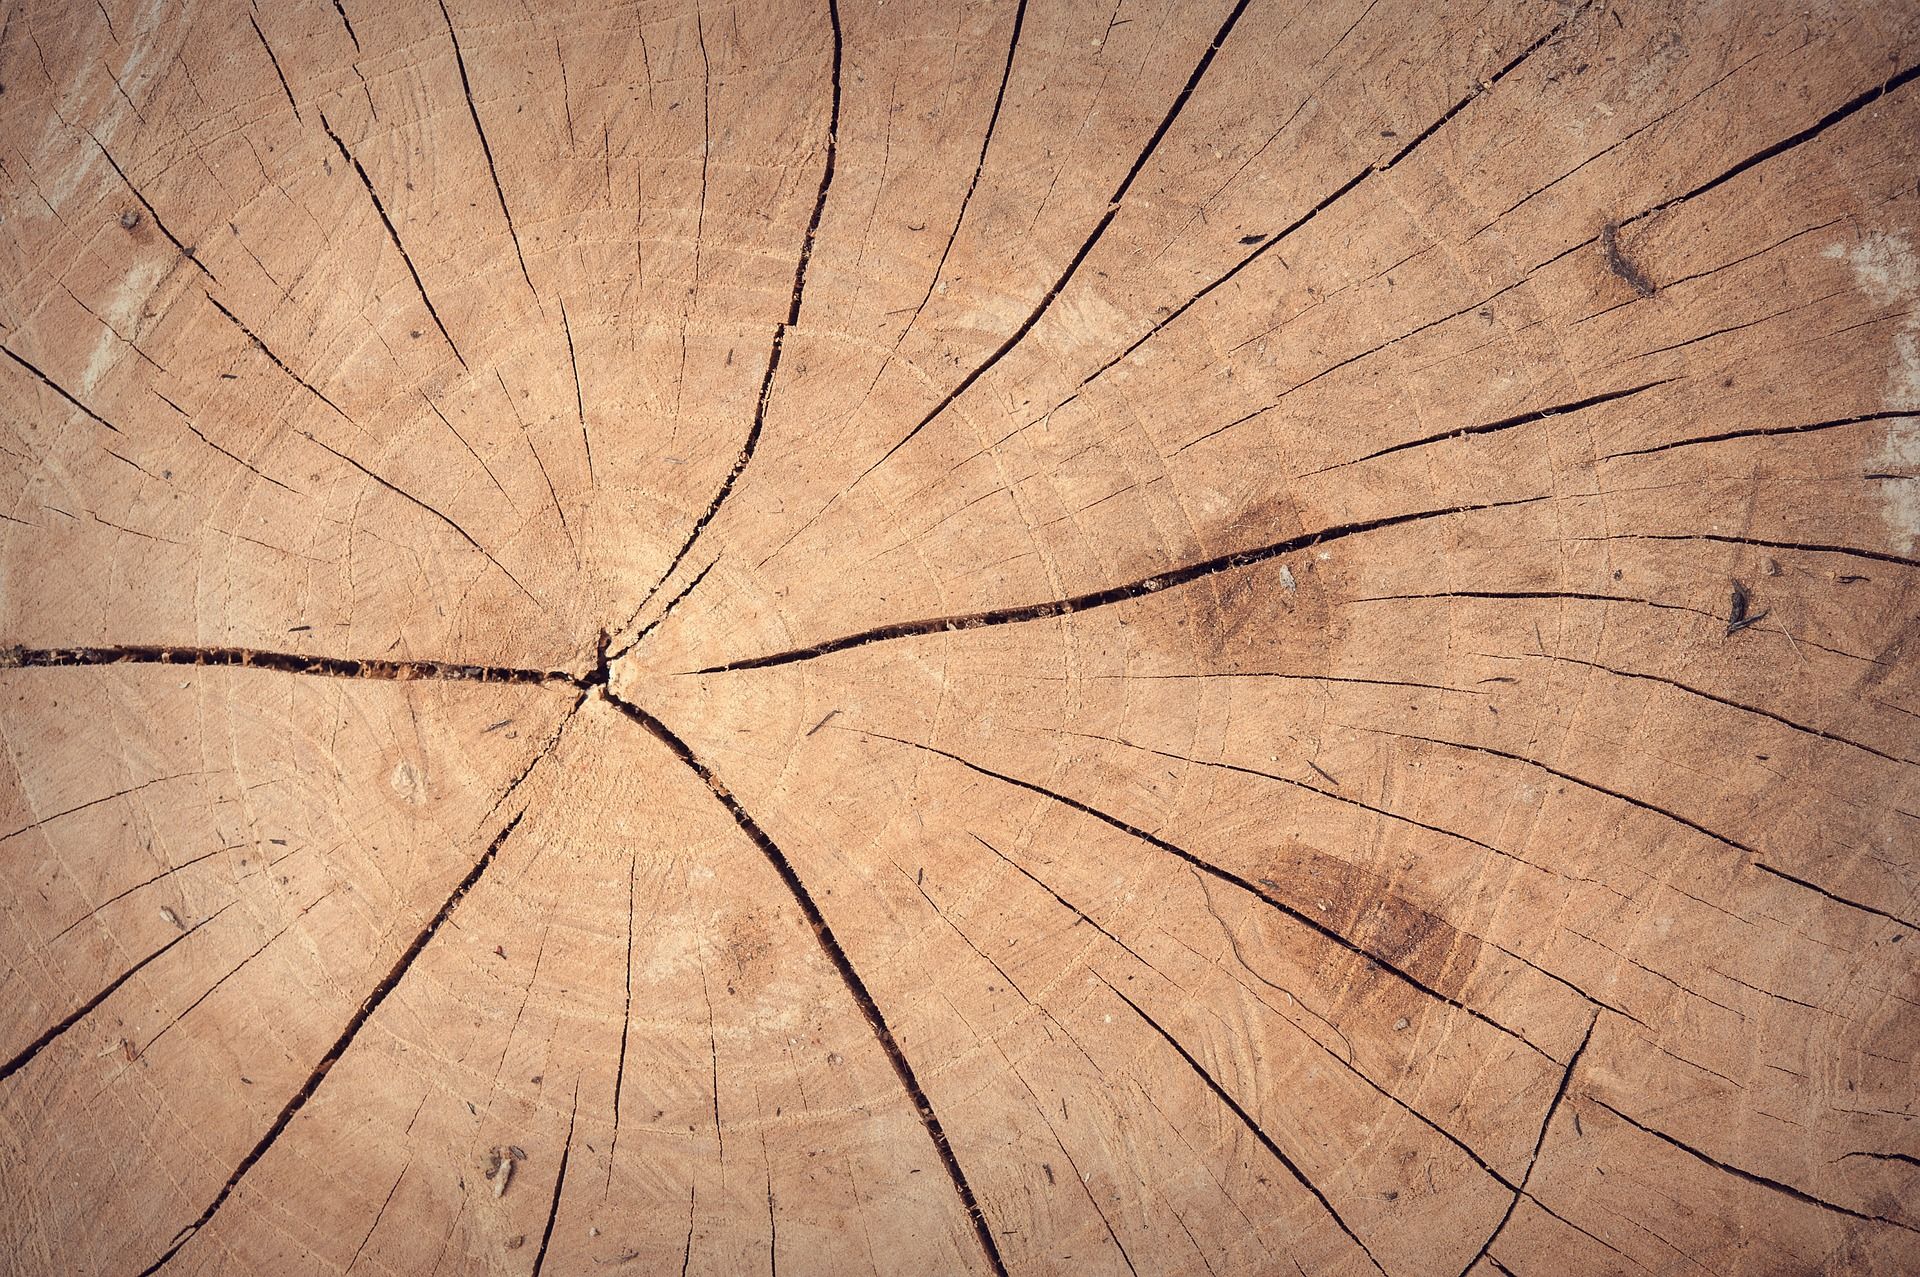 Holzbau Vogl in Bildern - Unsere Arbeit in Bildern